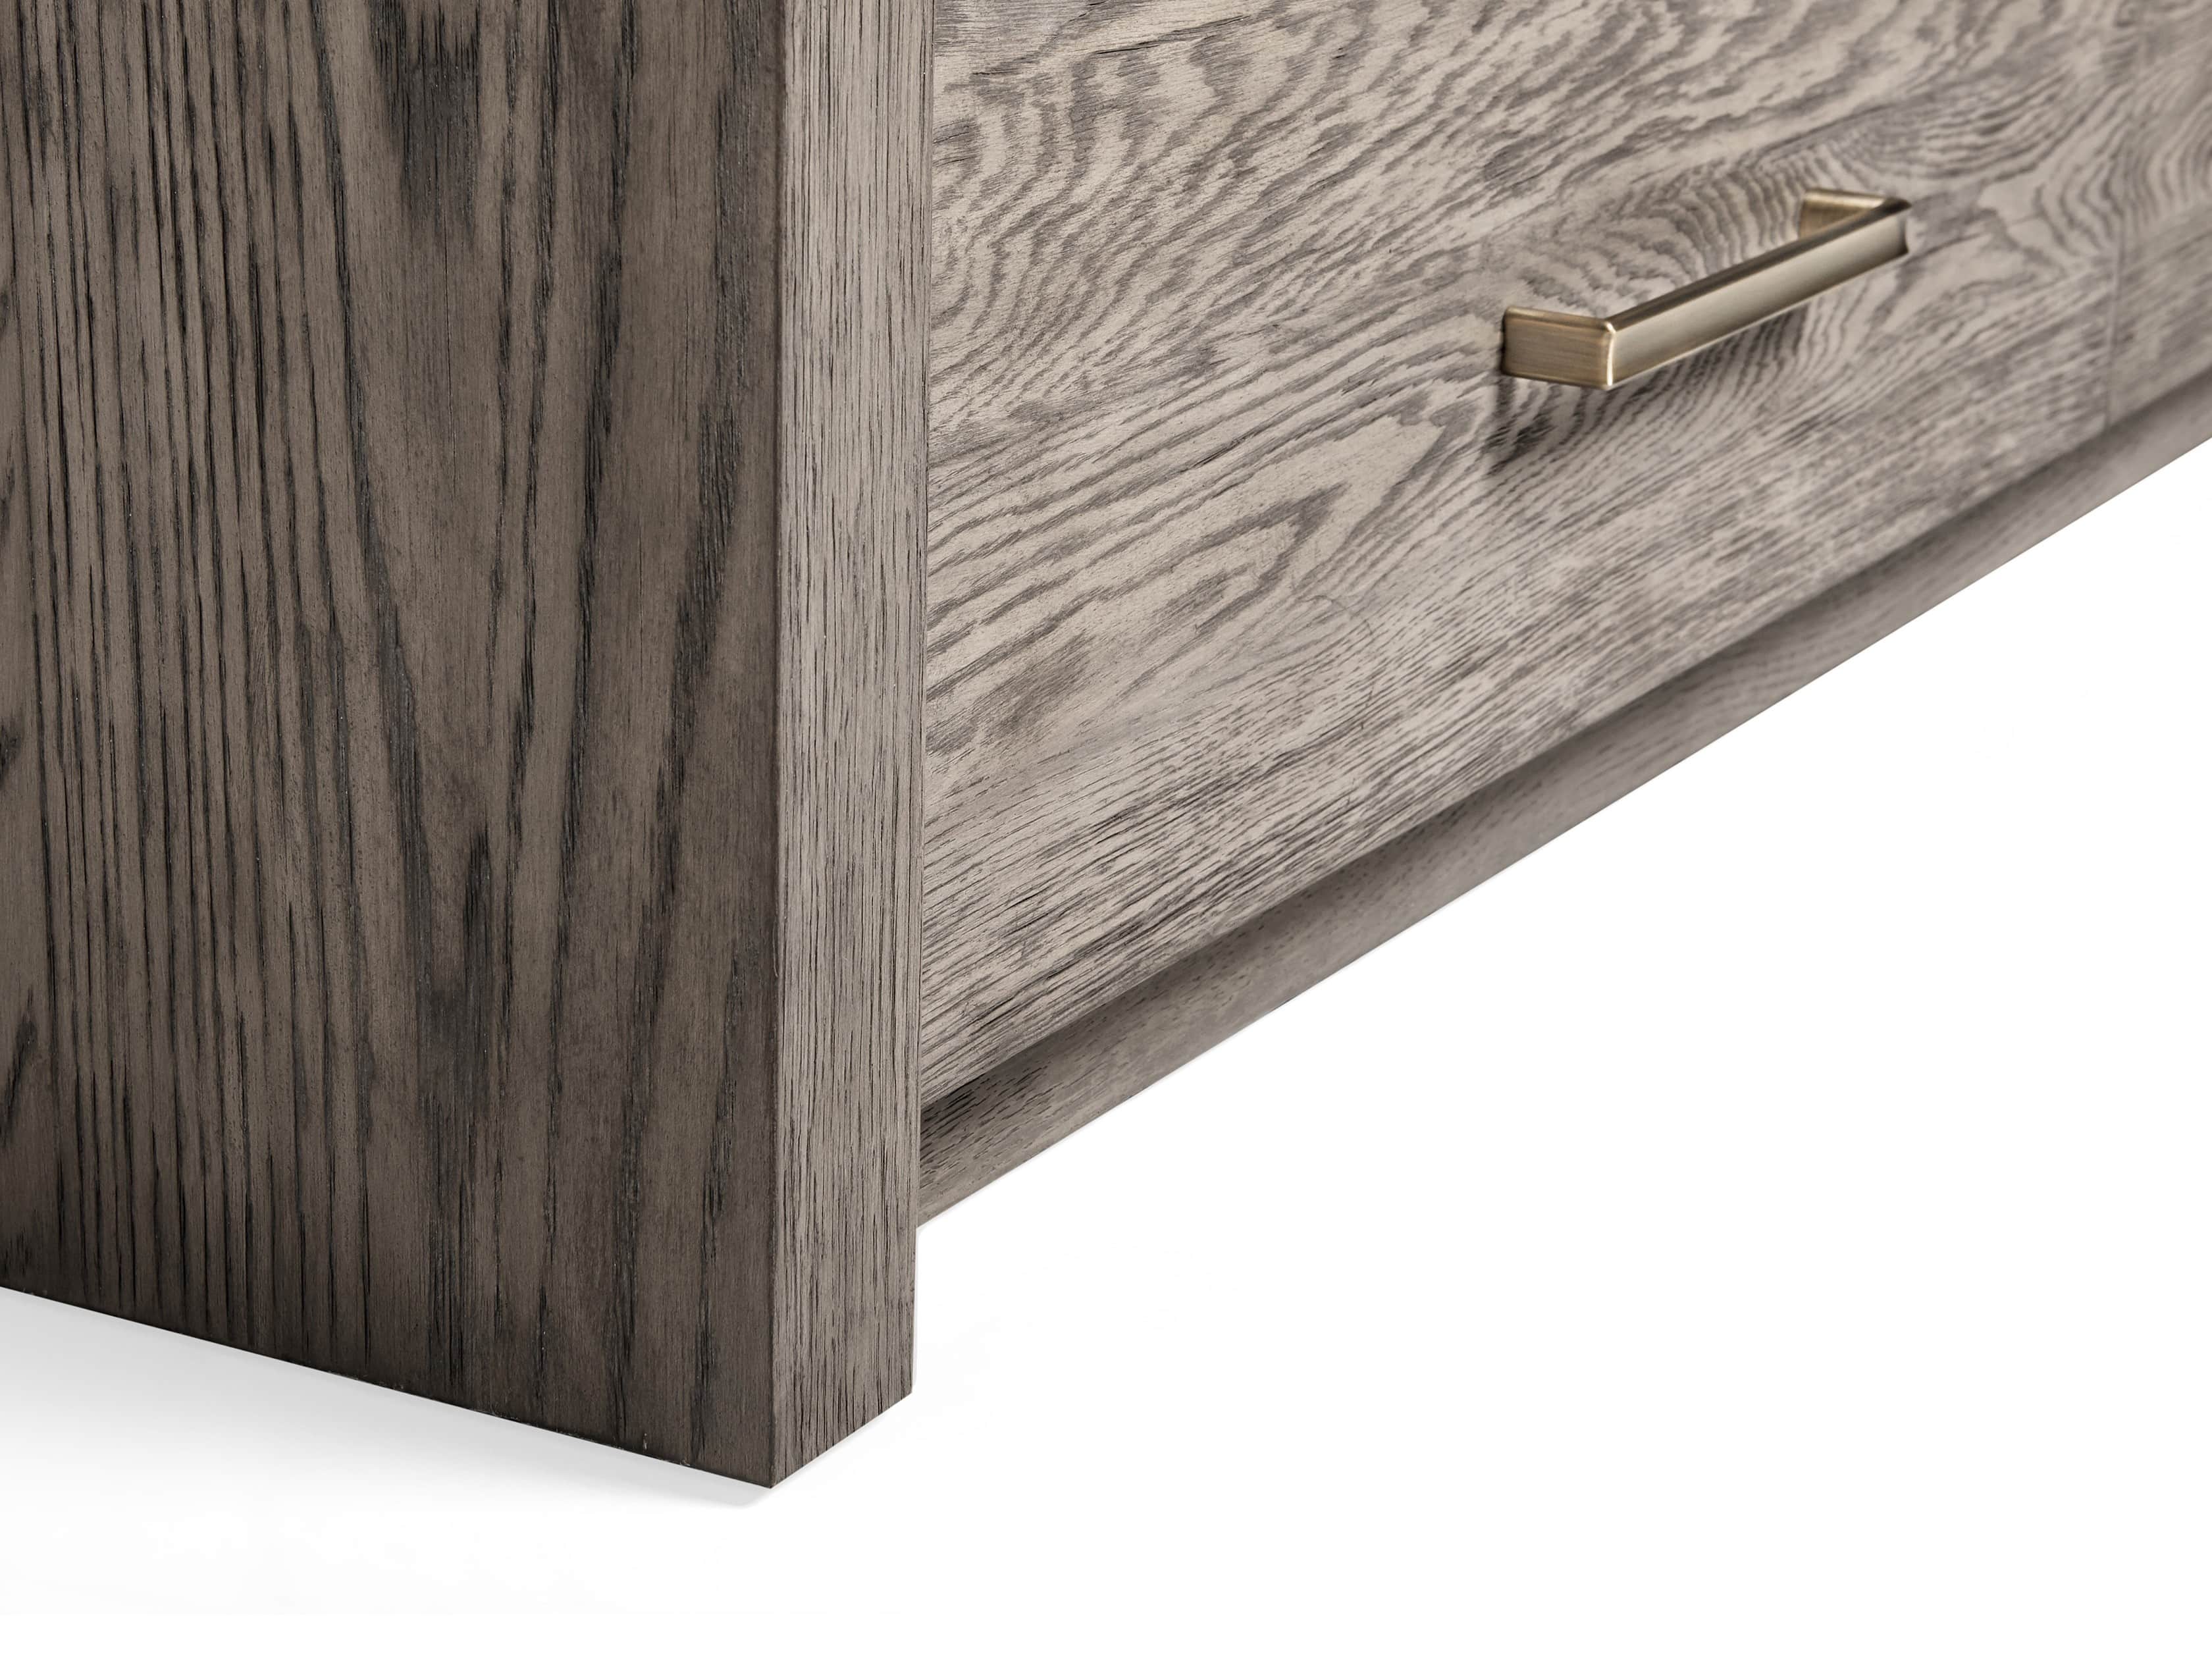 Bodhi Six Drawer Dresser Arhaus, Target Mixed Material Dresser Assembly